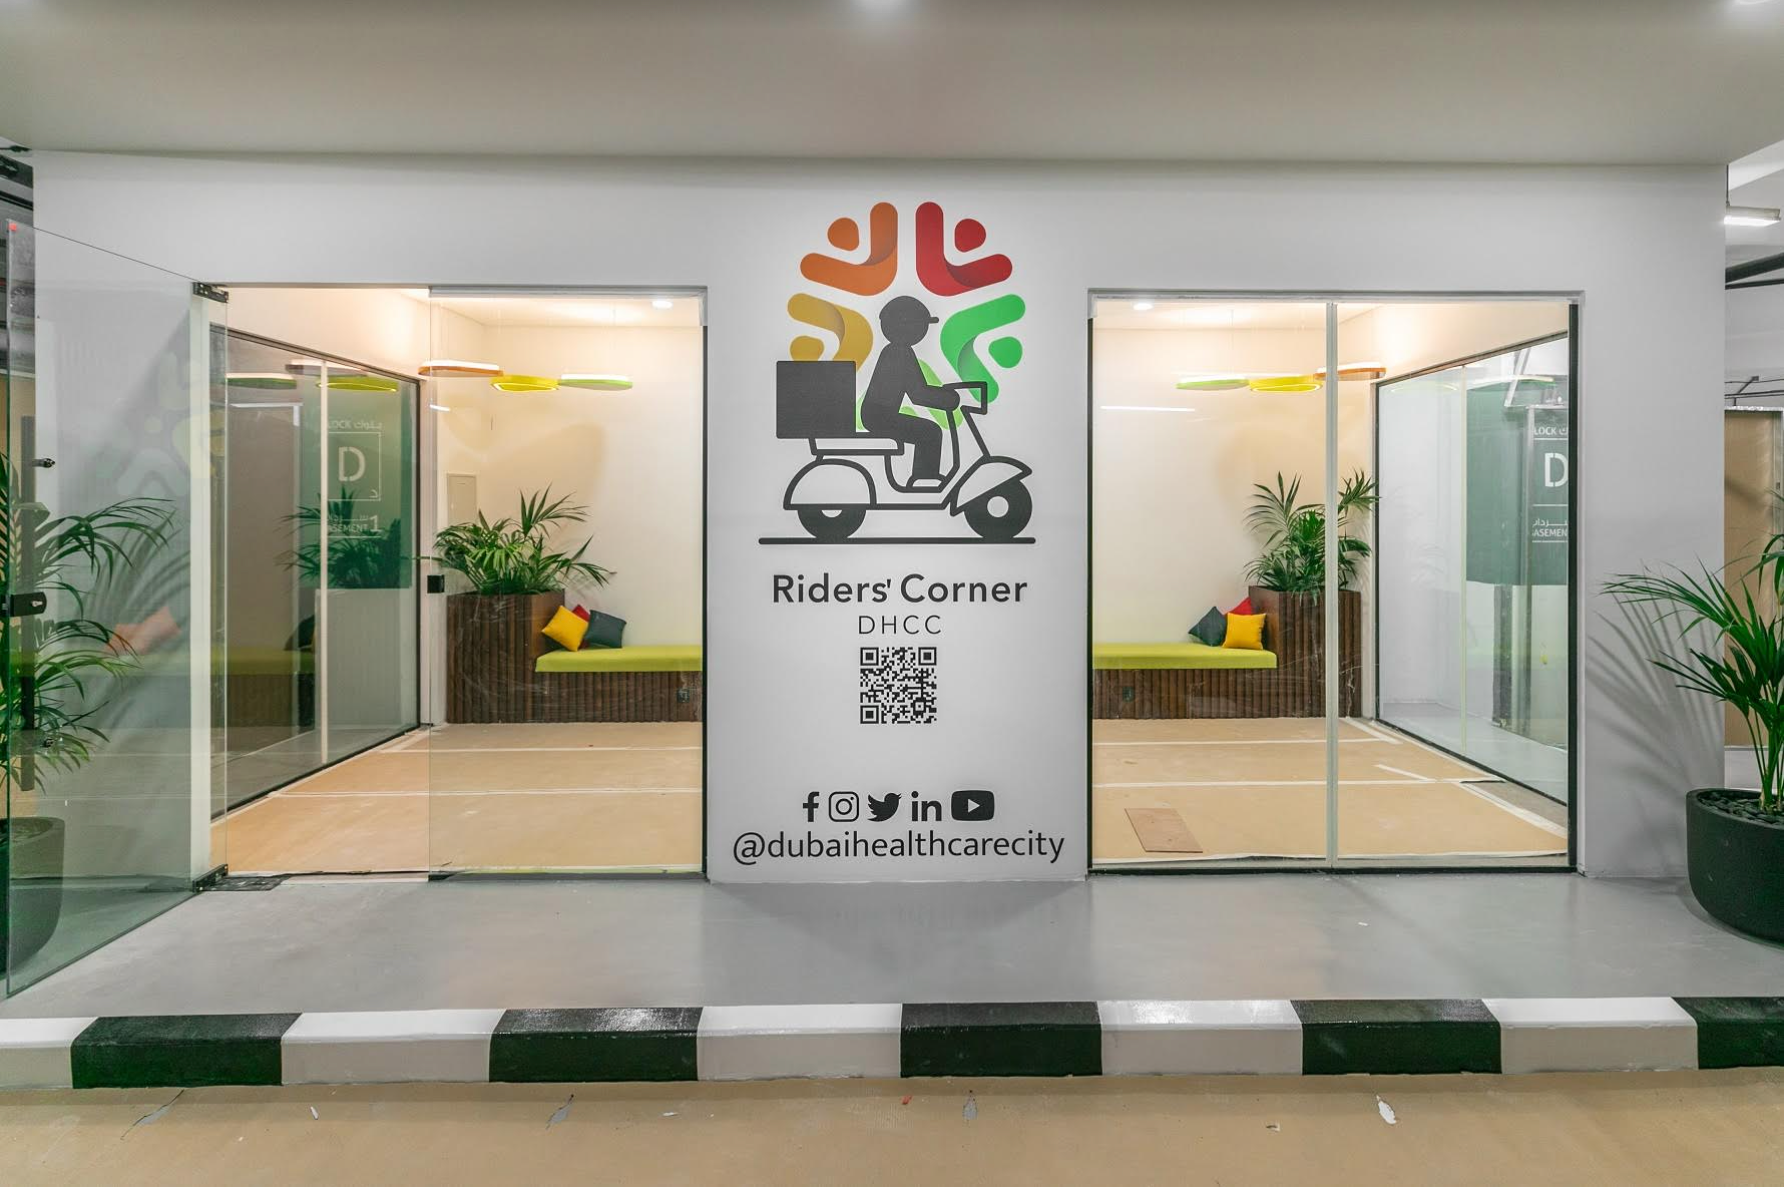 مدينة دبي الطبية تطلق مبادرة ركن الدرّاجين لتوفير صالة استراحة مكيفة وفحوصات طبية ومجموعة  من الخدمات الصحية لموظفي توصيل الطلبات